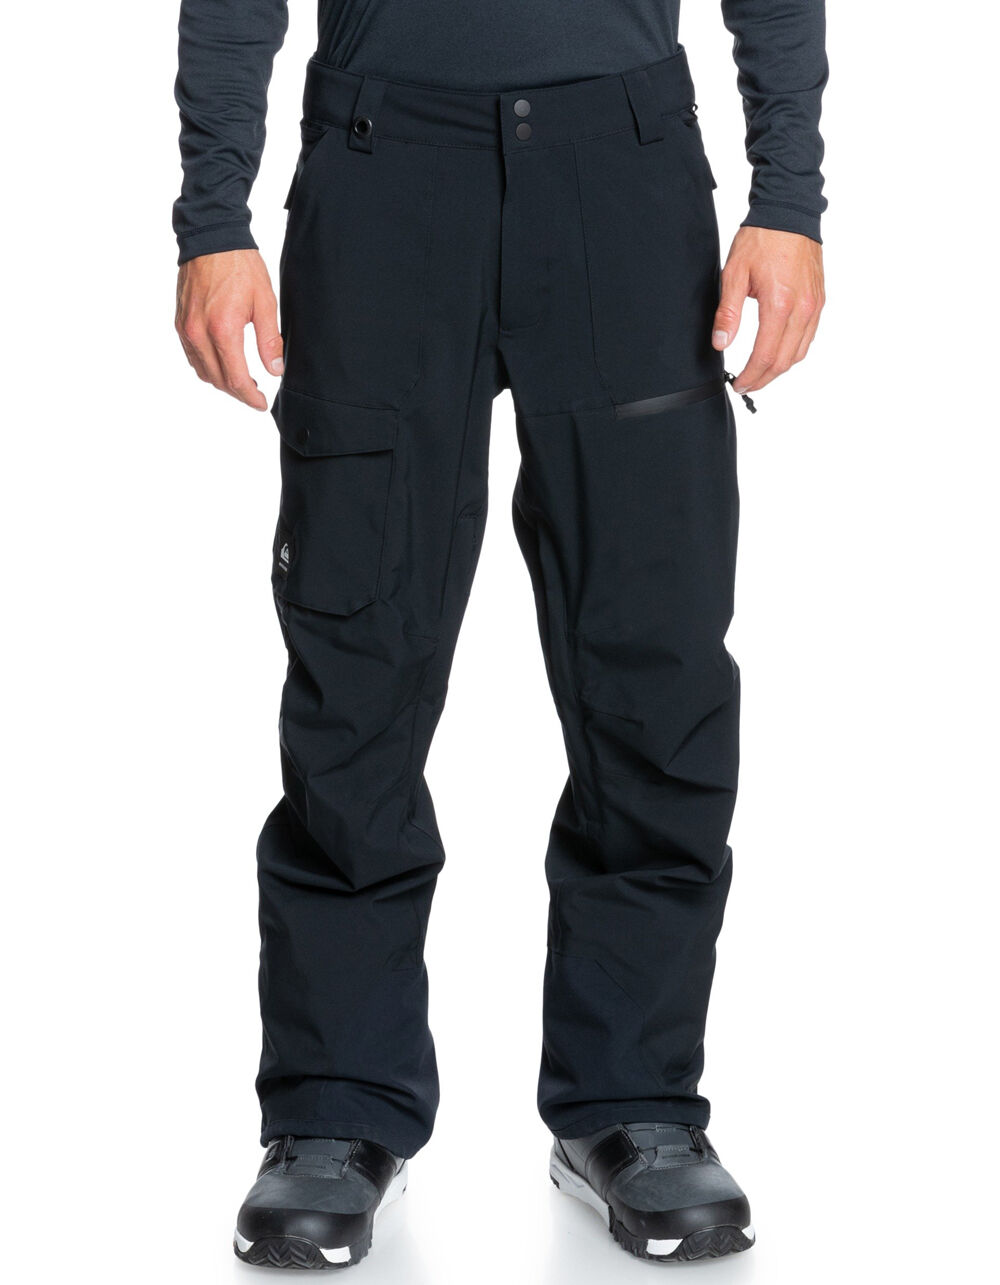 Quiksilver Mens X-Series Winner Ski snowboard pants Black Trousers waterproof 